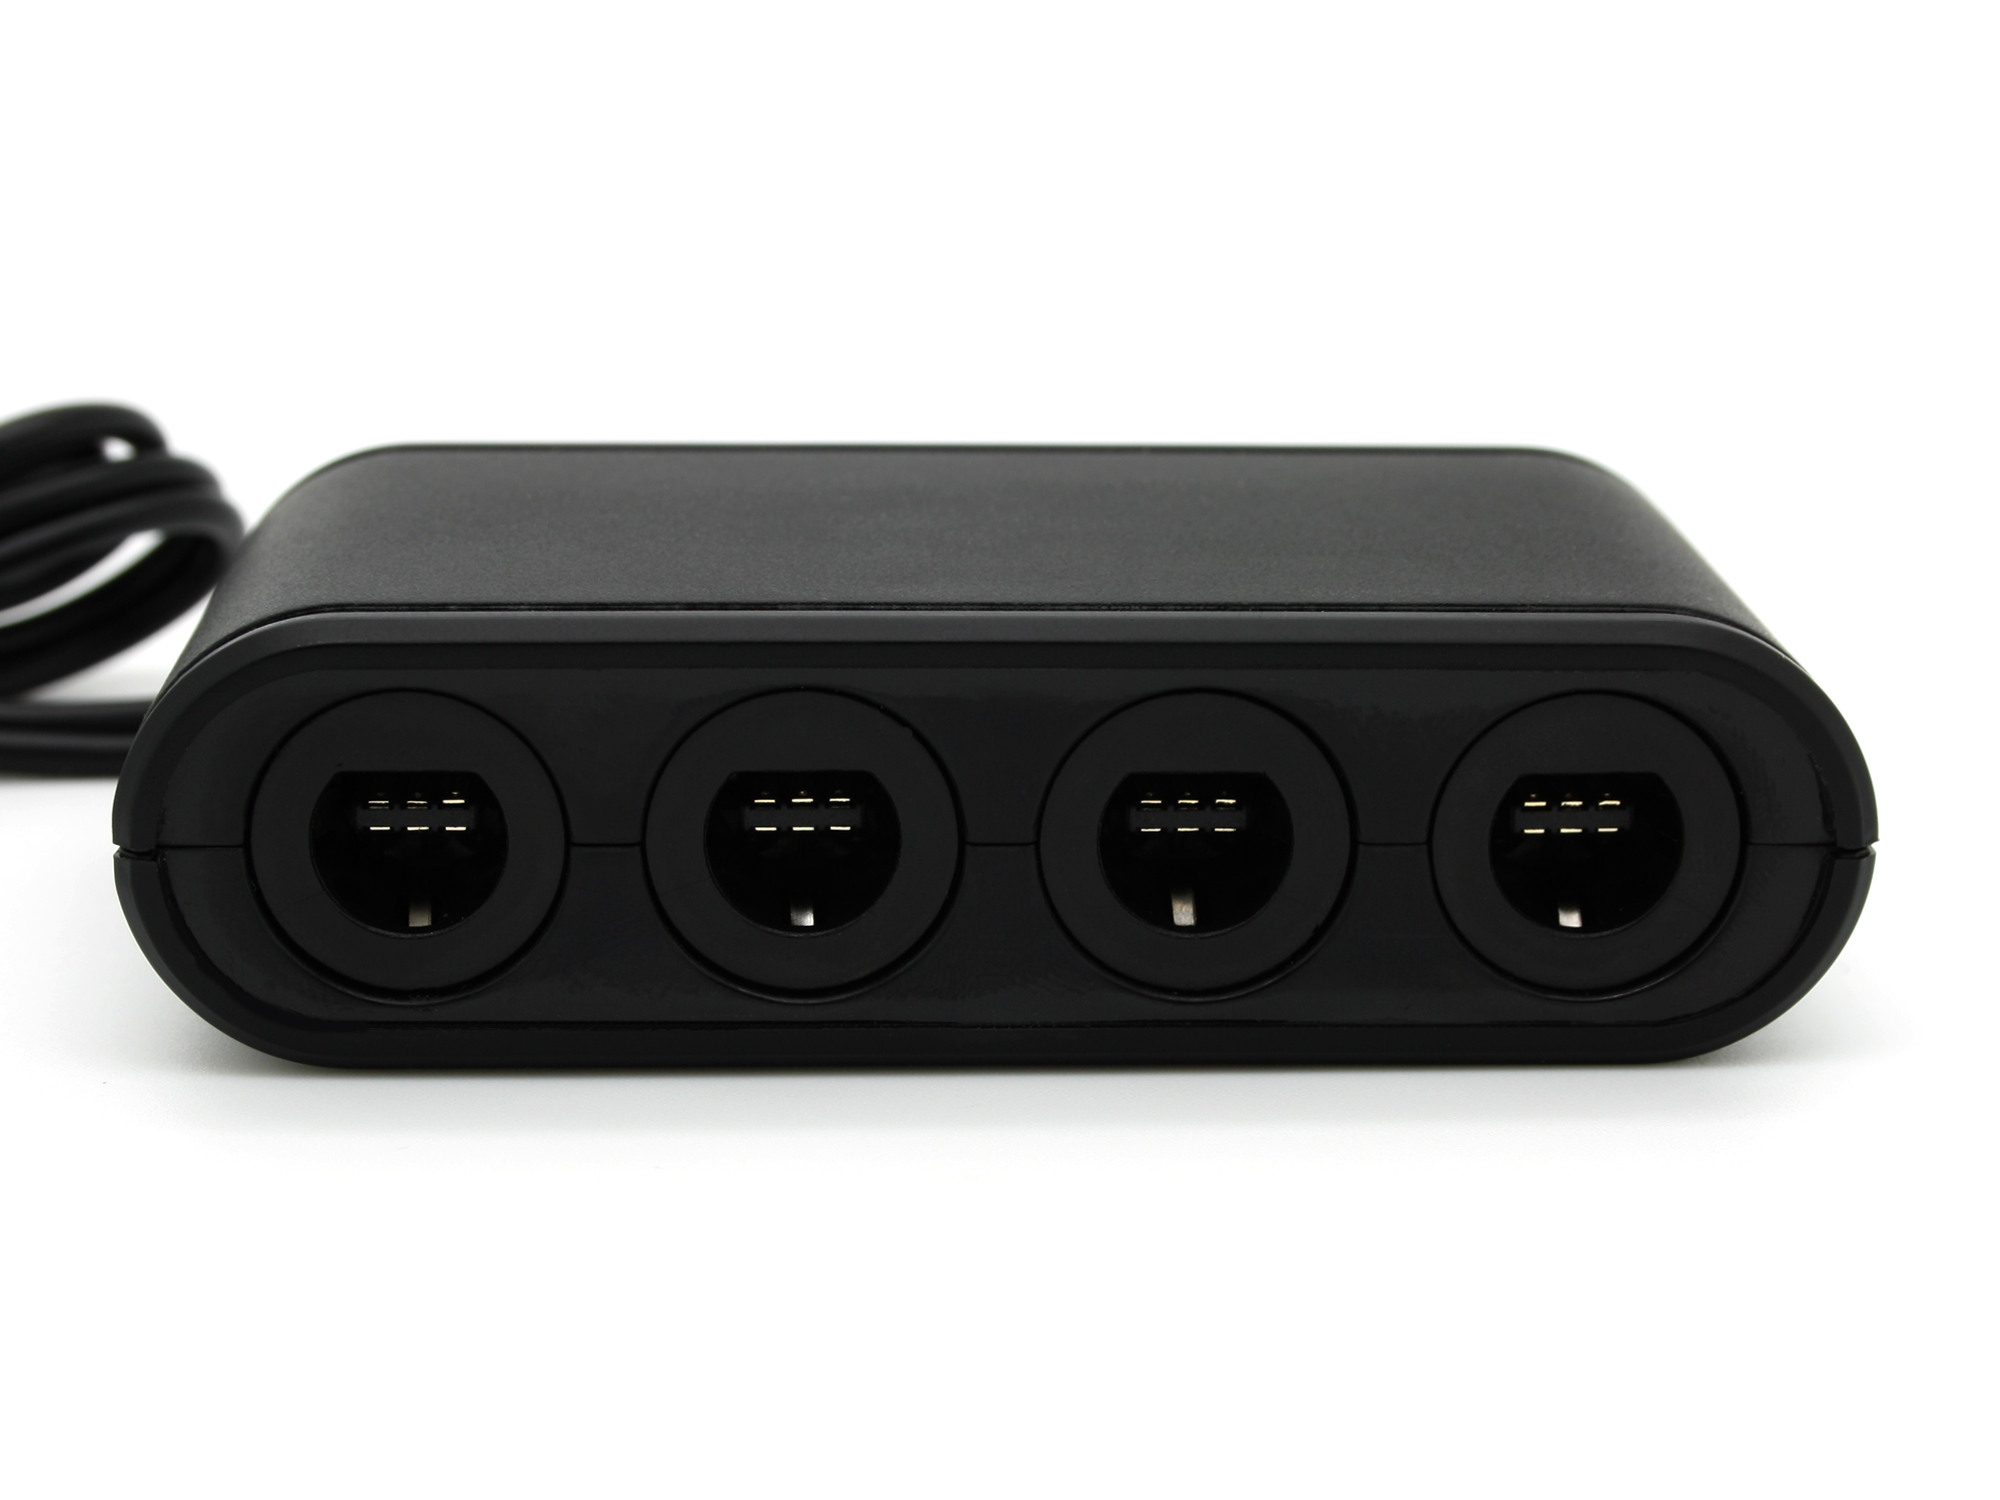 PC, 4 Schwarz für GameCube Adapter, SKGAMES Nintendo U / Switch Adapter Port Controller Wii /